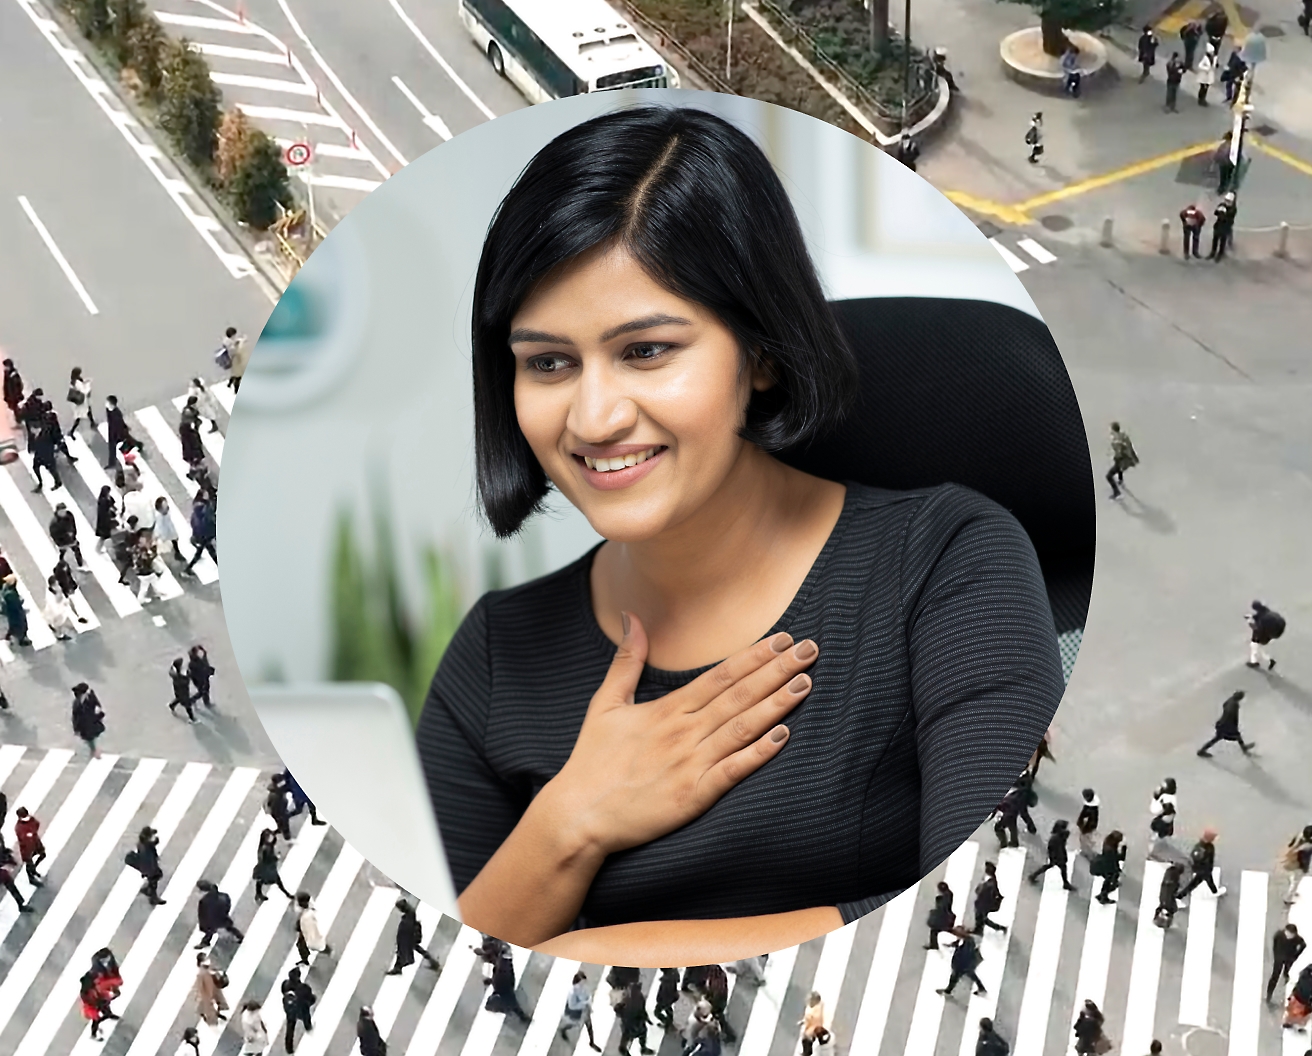 Kobieta trzymająca rękę na piersi podczas pracy na laptopie, obraz tła jest ustawiony jako skrzyżowanie z przechodzącymi osobami